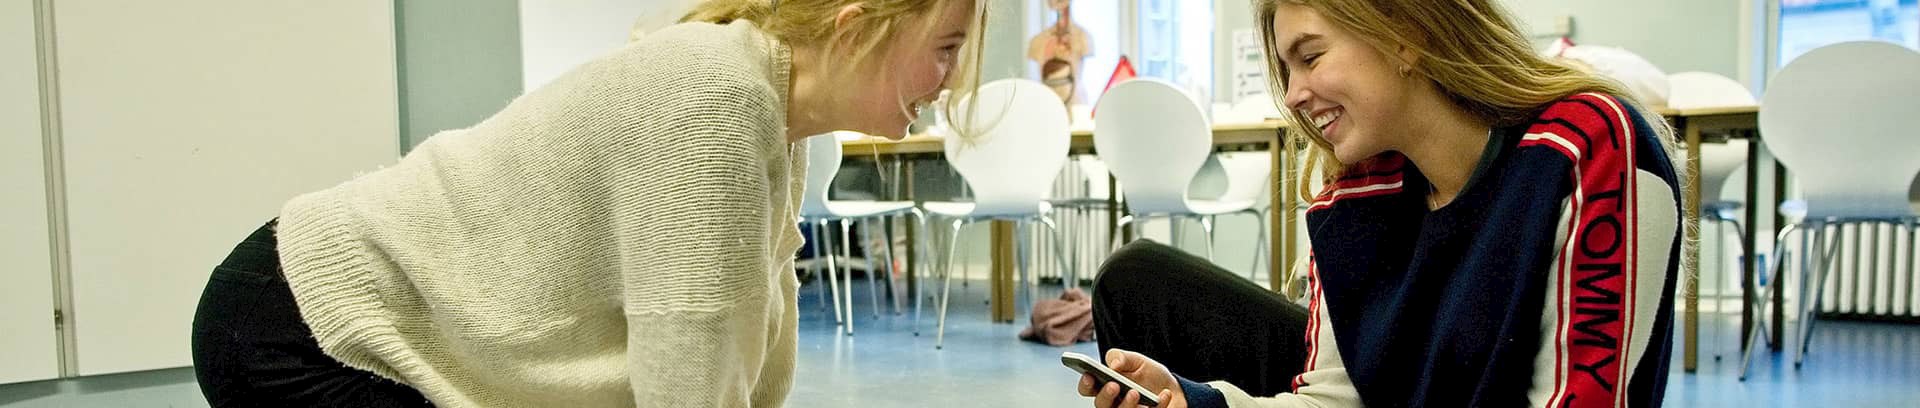 Førstehjælpskursus til kørekort ved FOF Aarhus, underviser Bente Dyhrberg